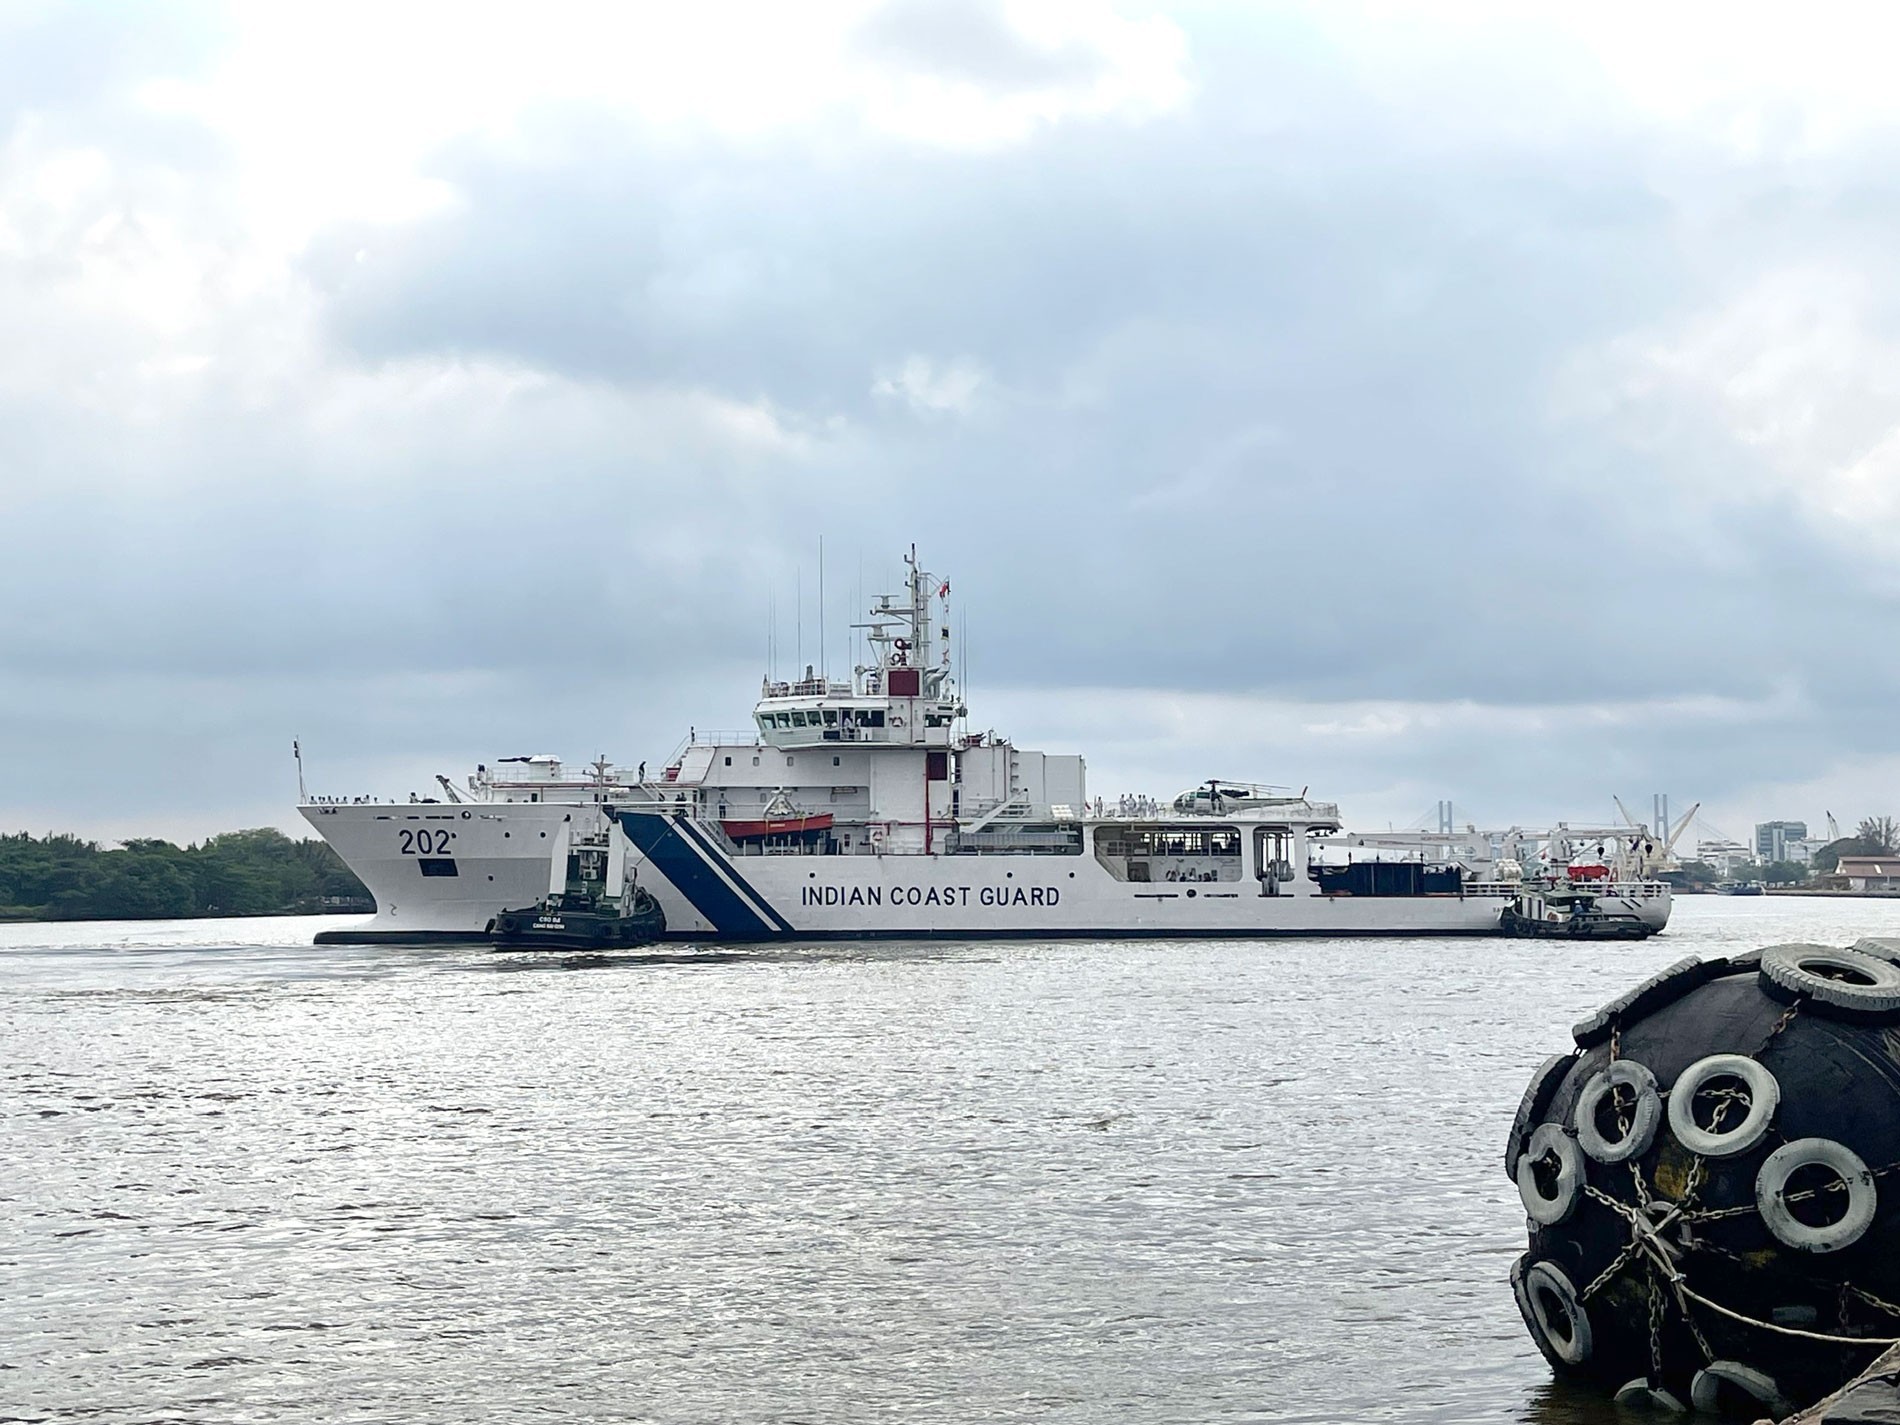 Tàu Samudra Paheredar thuộc Lực lượng Bảo vệ Bờ biển Ấn Độ chuẩn bị cập cảng bến Nhà Rồng bắt đầu chuyến thăm Thành phố Hồ Chí Minh.